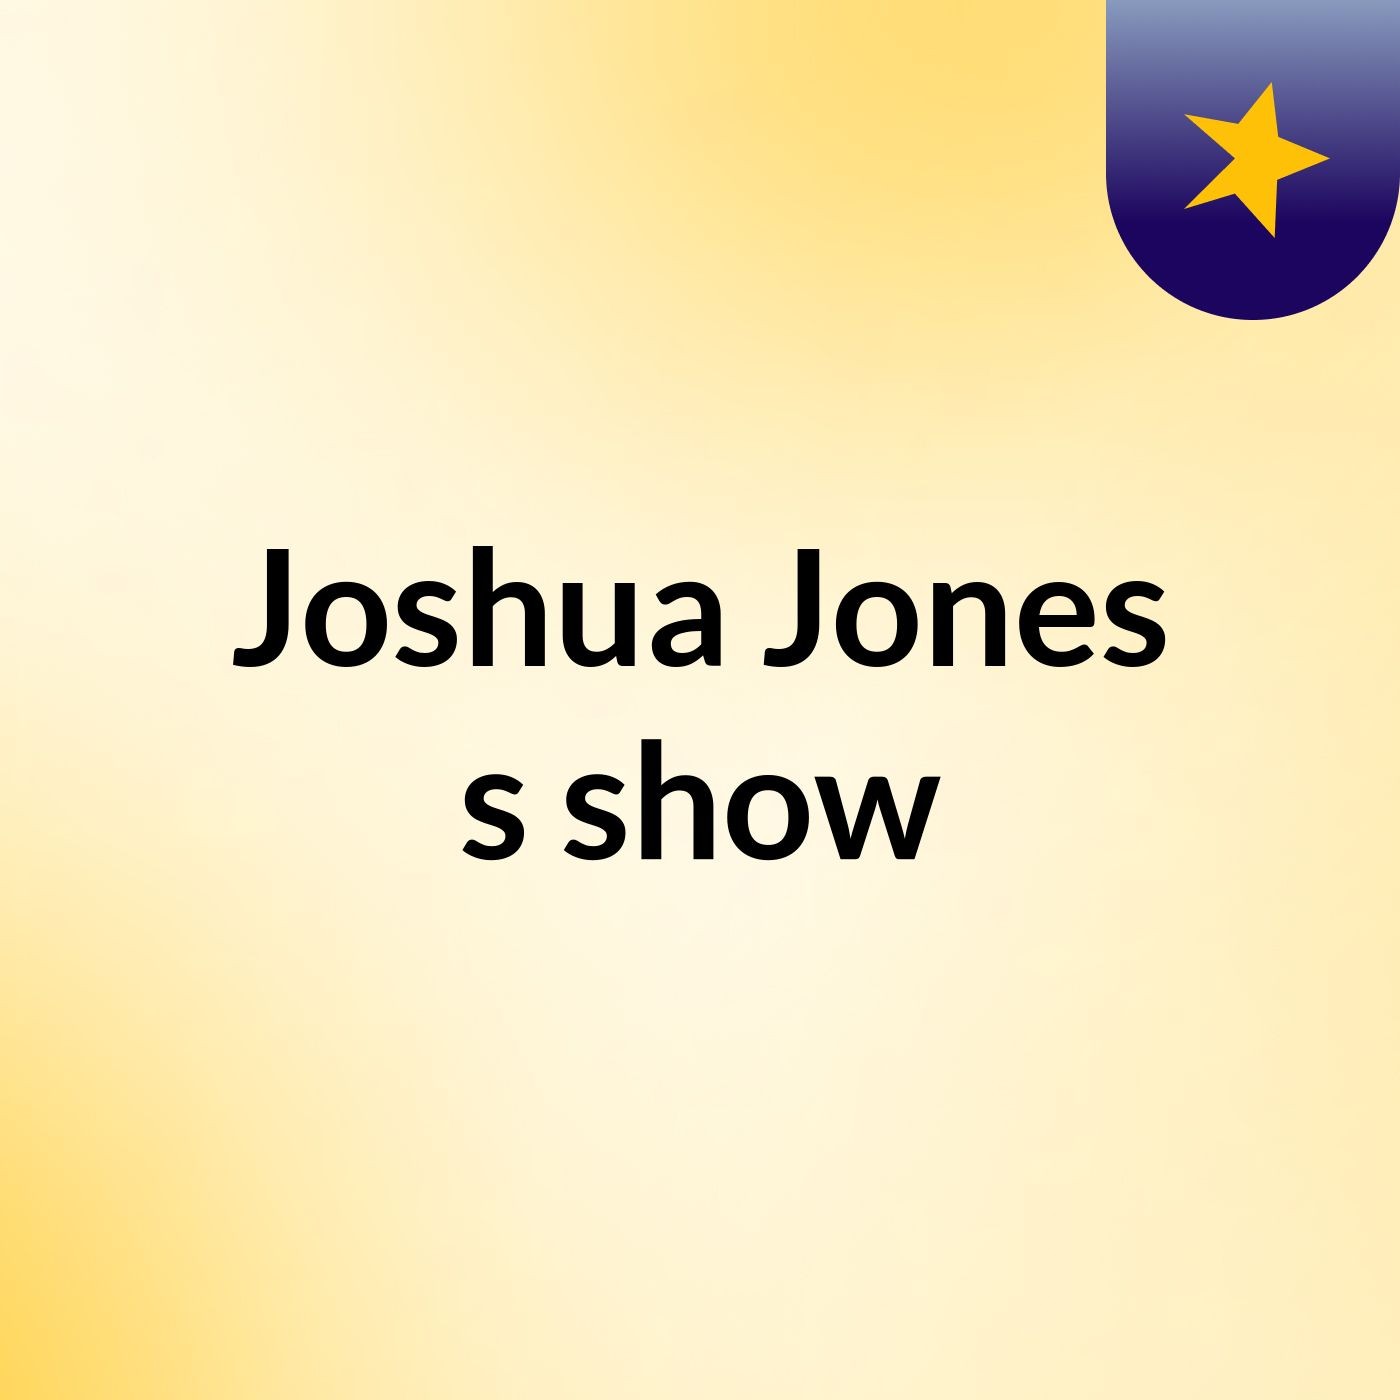 Episode 2 - Joshua Jones's show